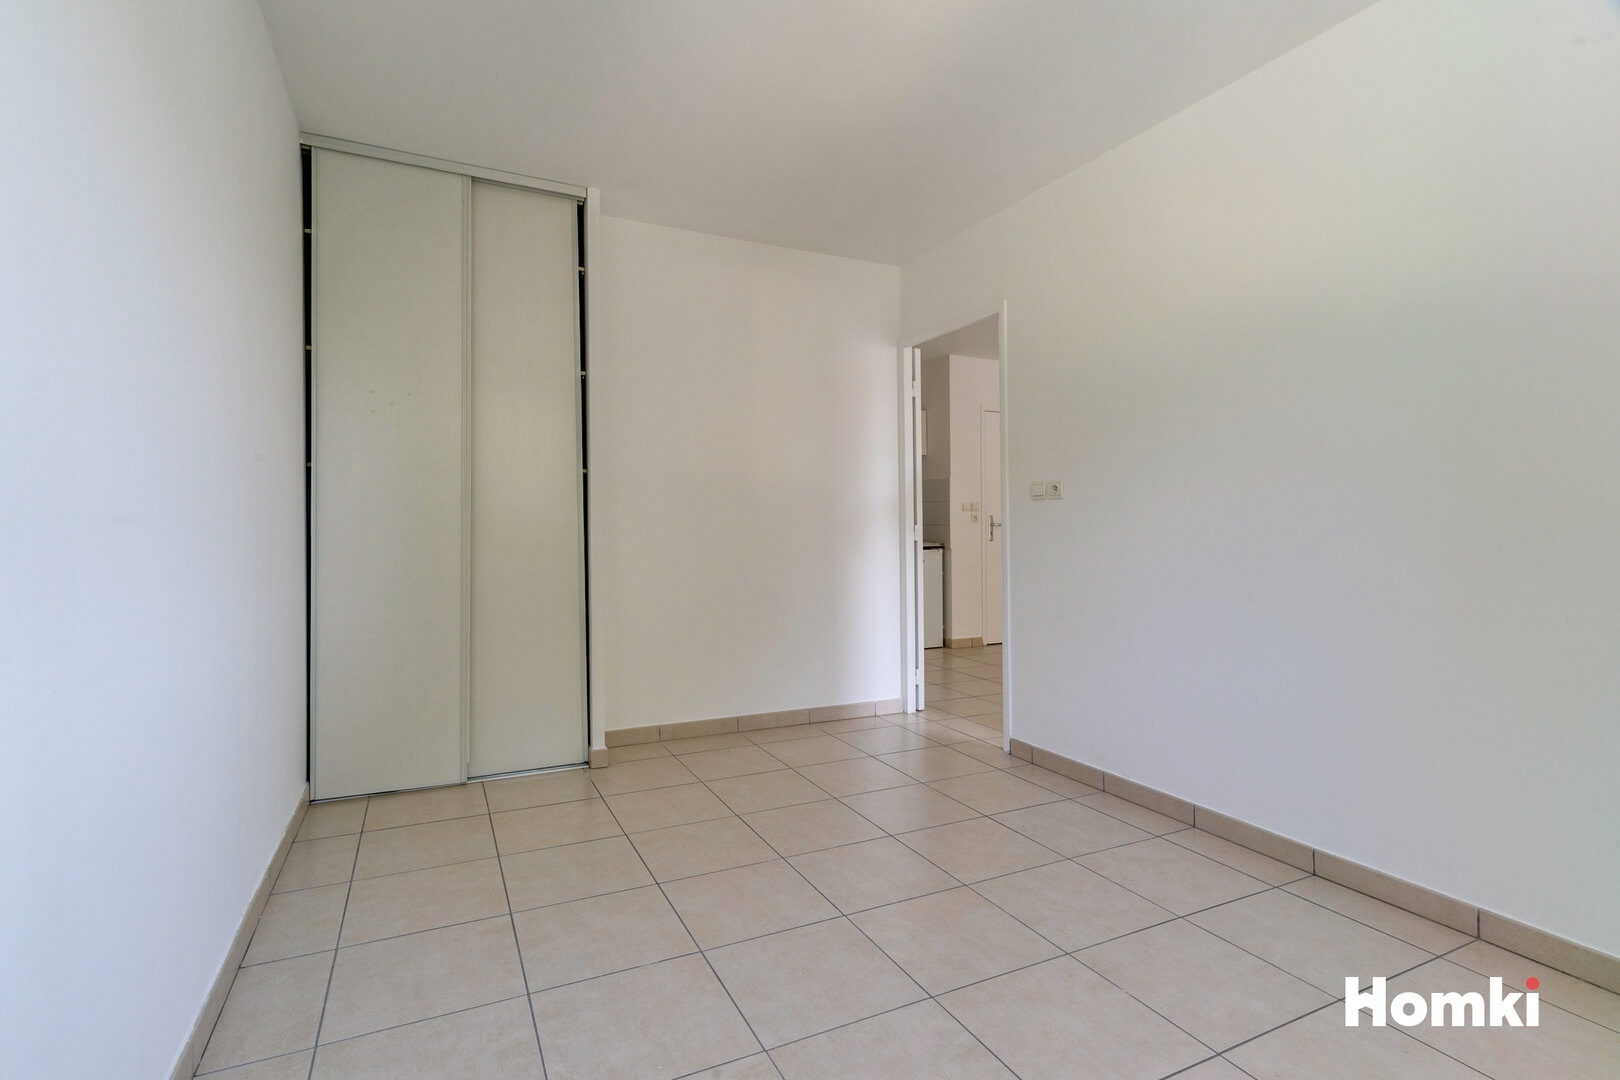 Homki - Vente Appartement  de 36.0 m² à La Ciotat 13600